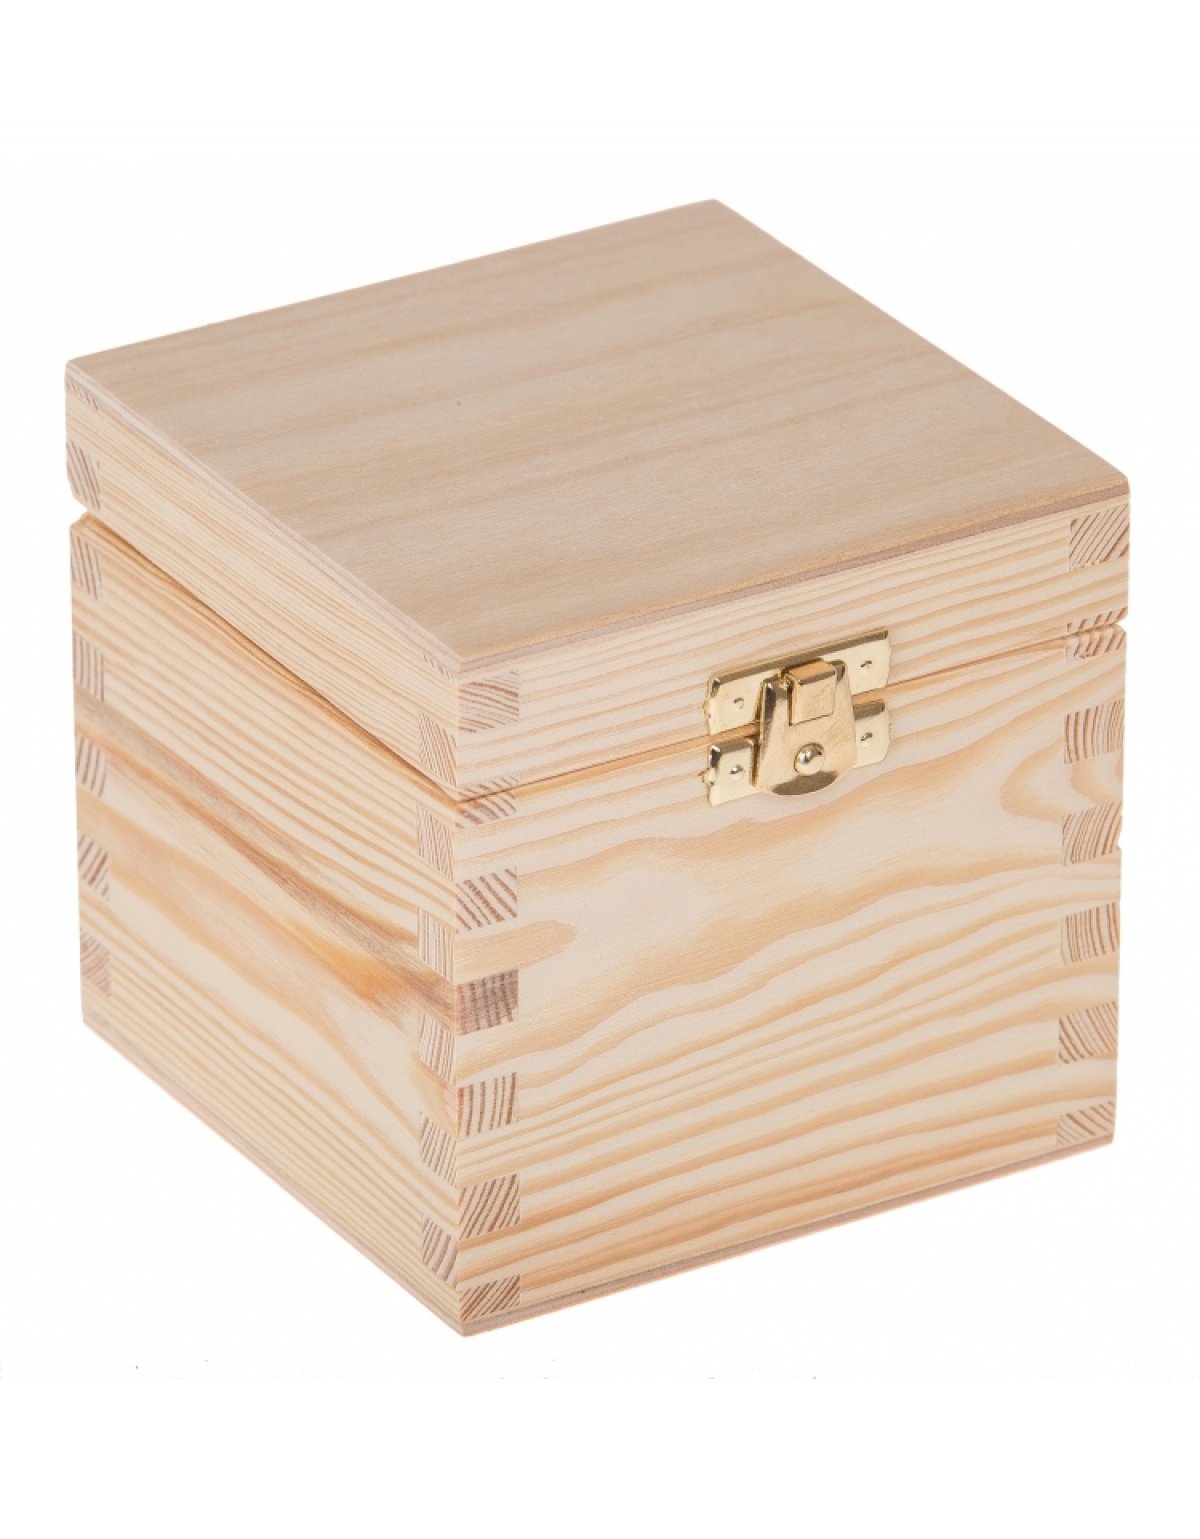 Krabika devn 13,5x13,5x10,7 cm - zapnn - Kliknutm na obrzek zavete